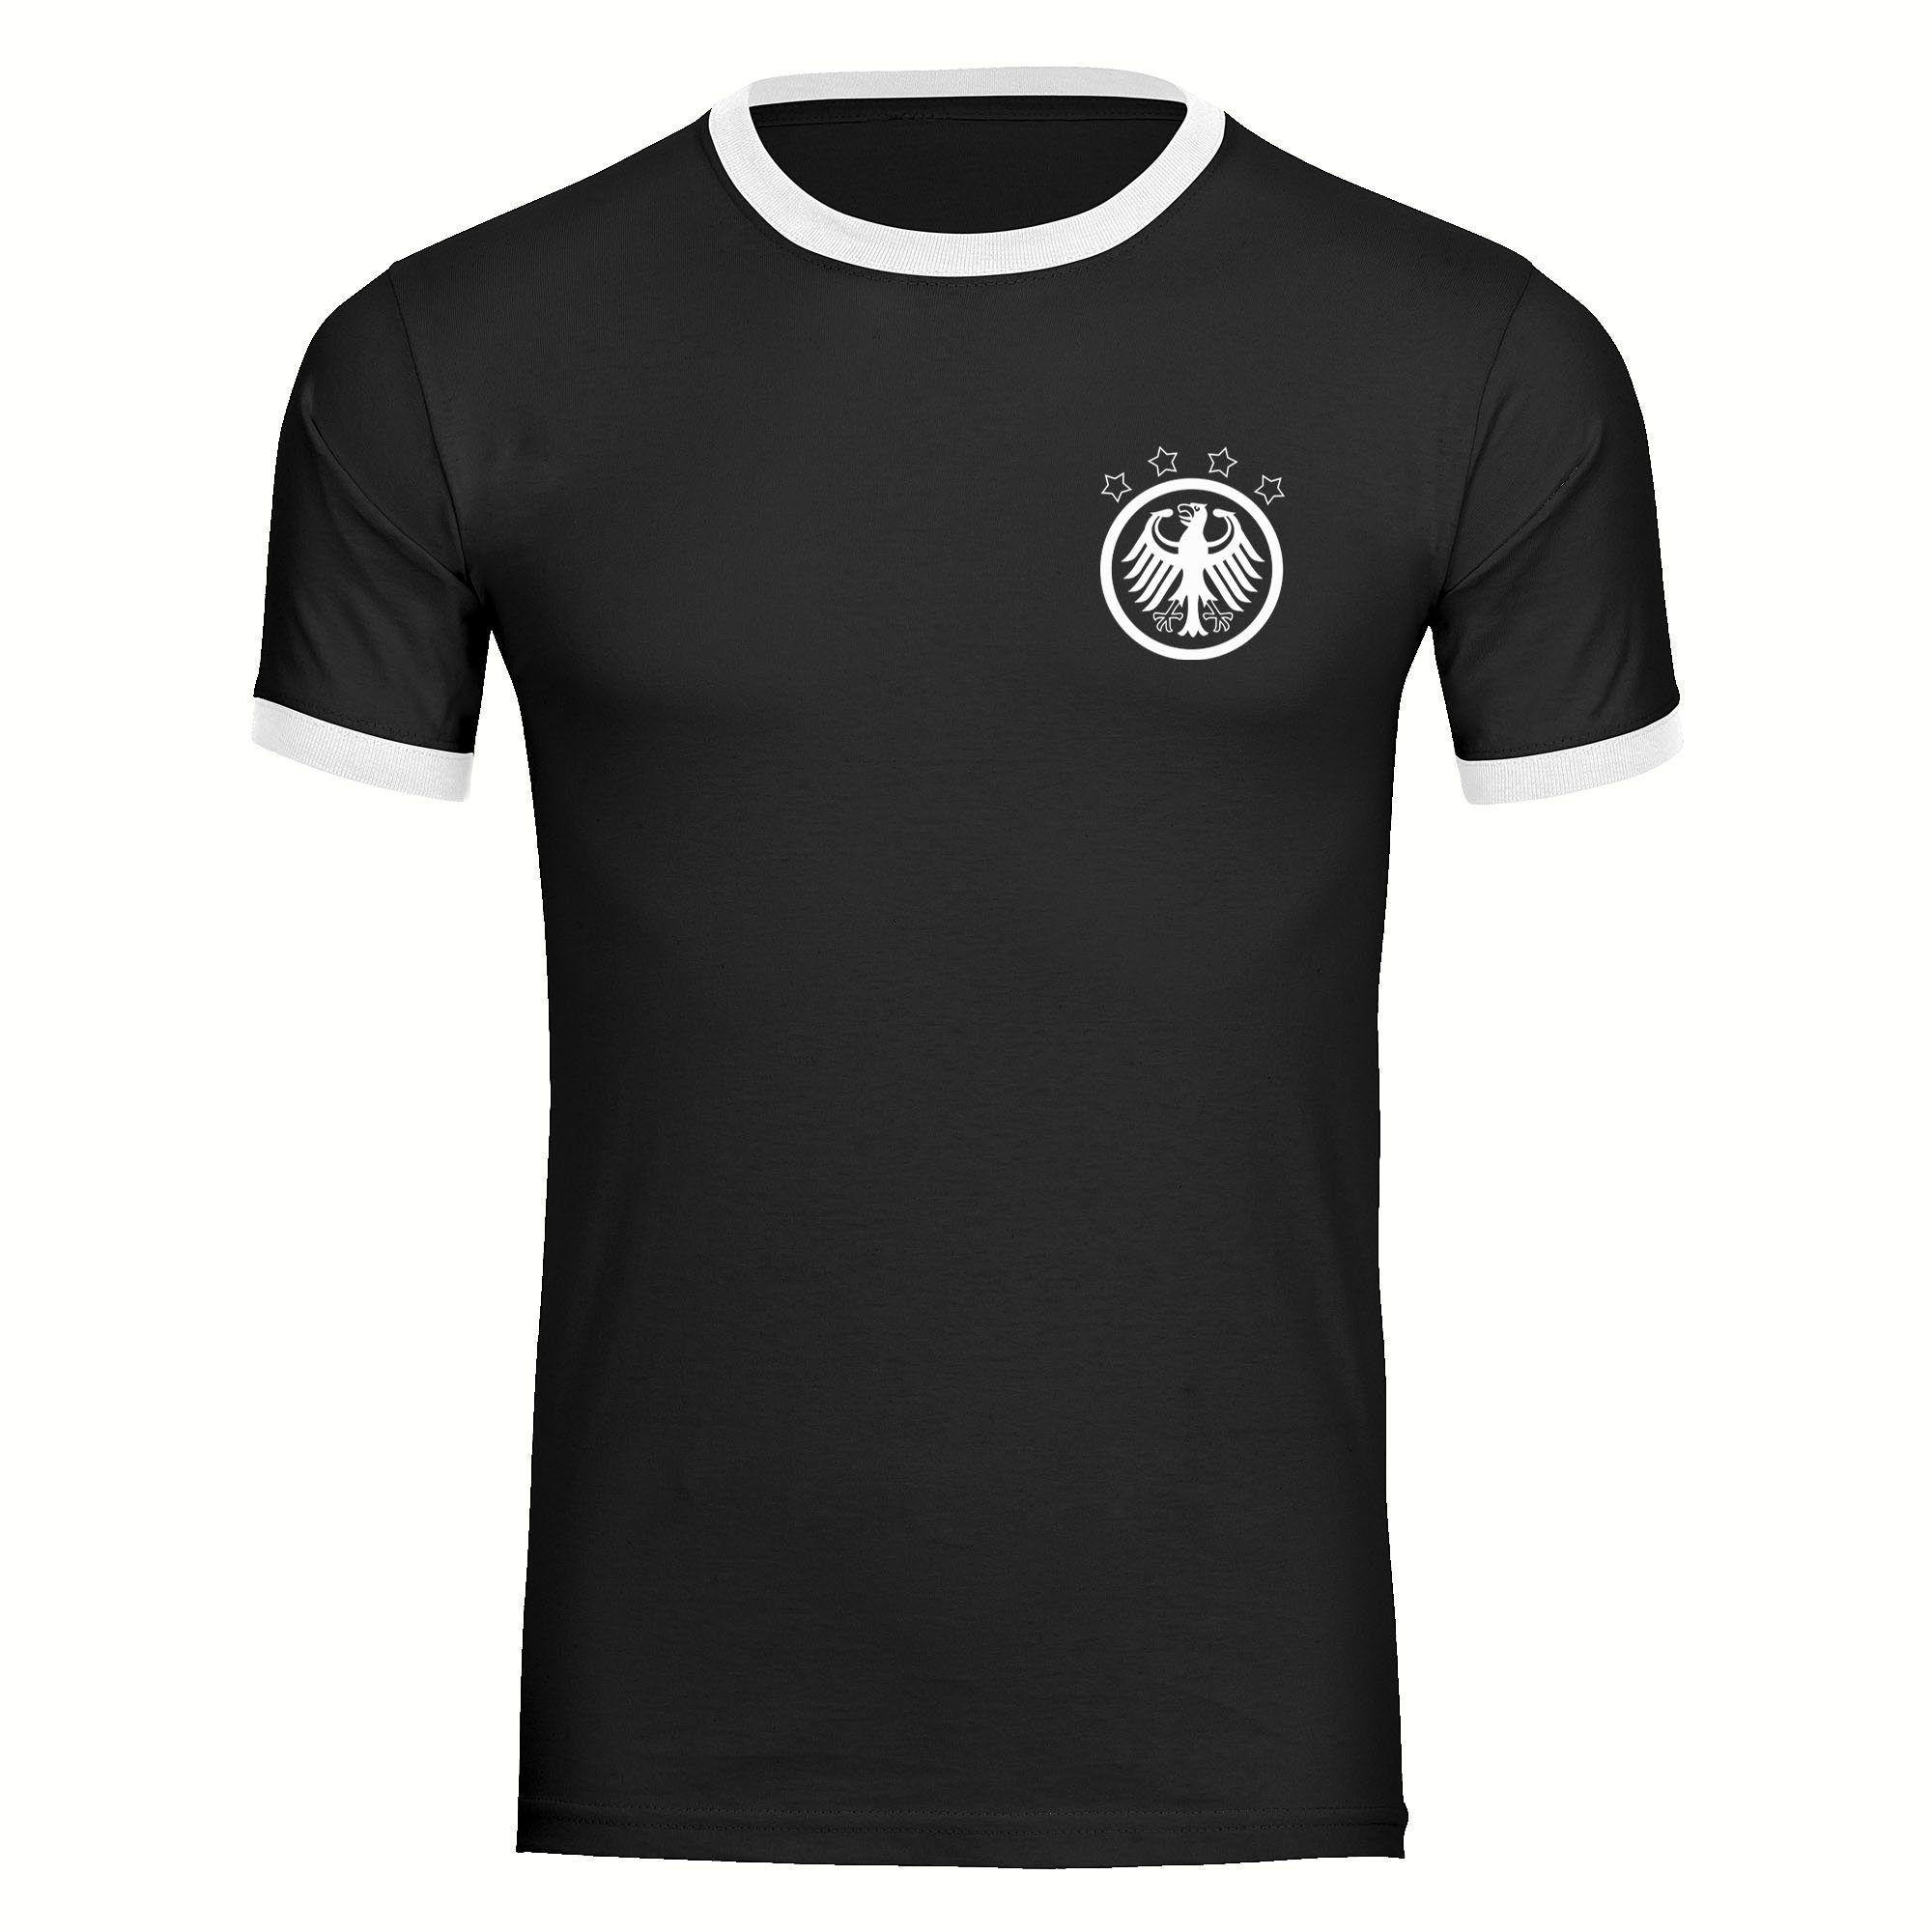 multifanshop T-Shirt Kontrast Germany - Adler Retro - Männer